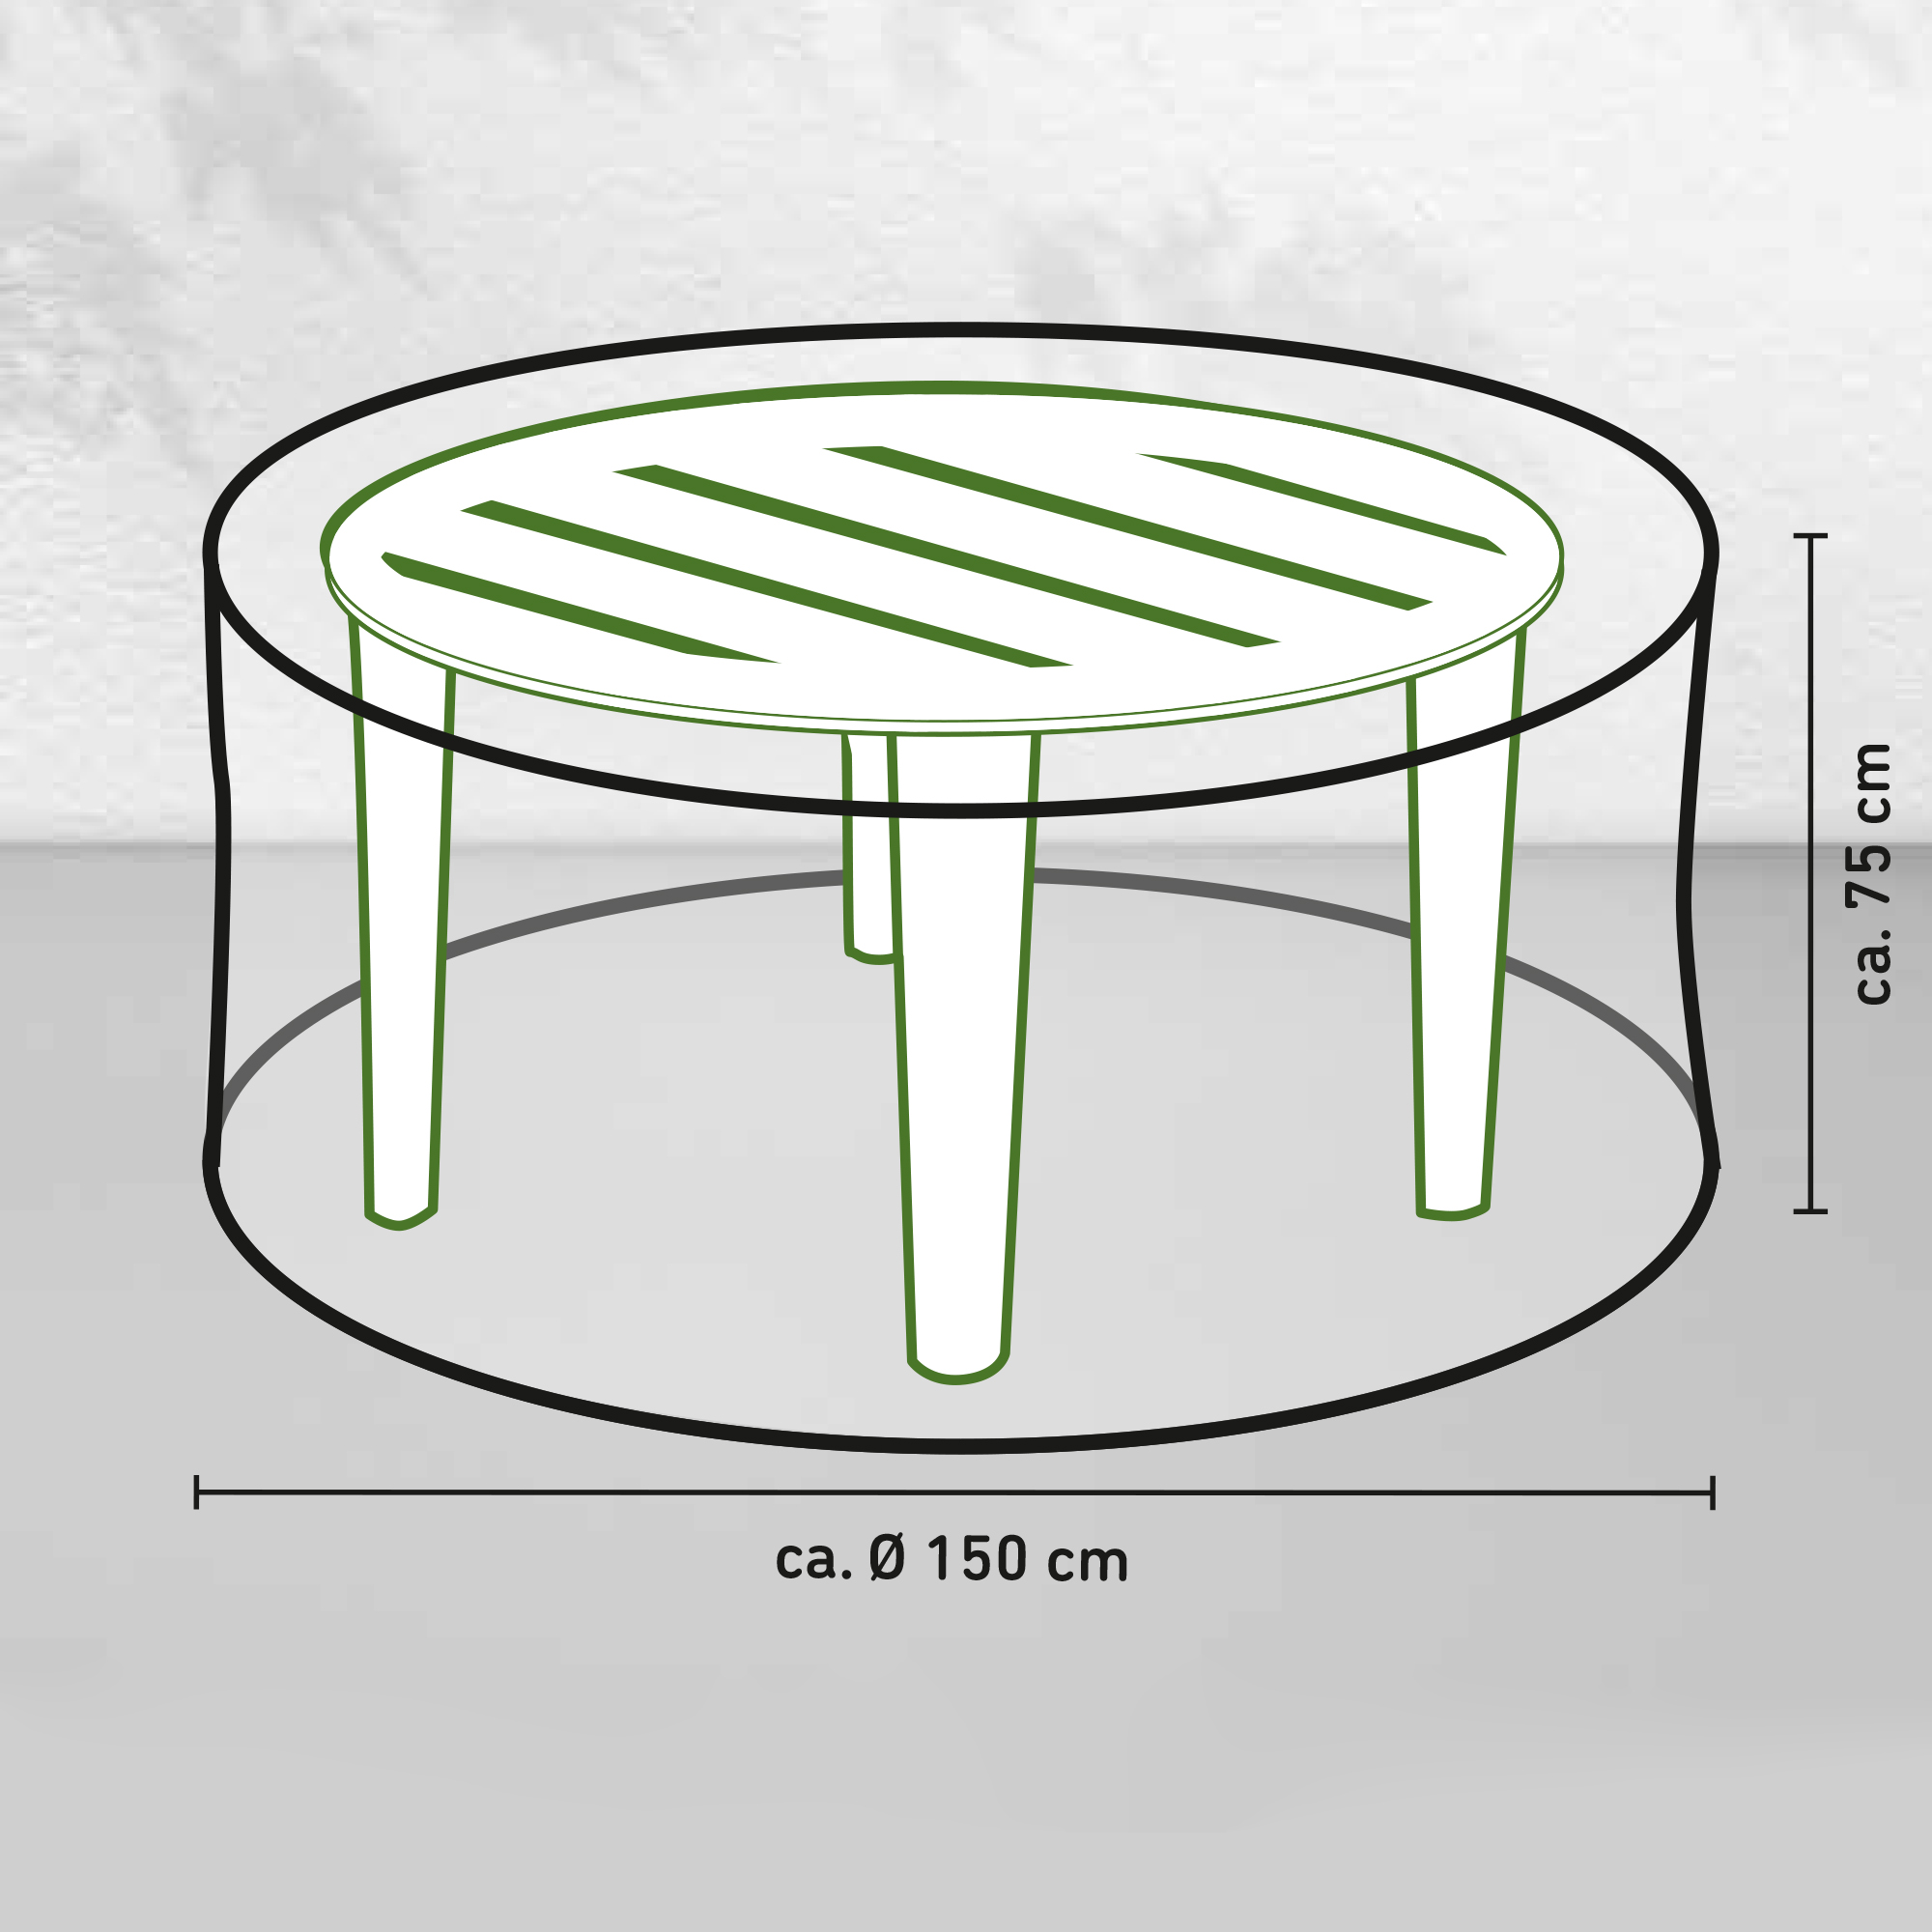 Tisch-Schutzhülle für runde Tische mit Ø bis 1,5 m + product picture